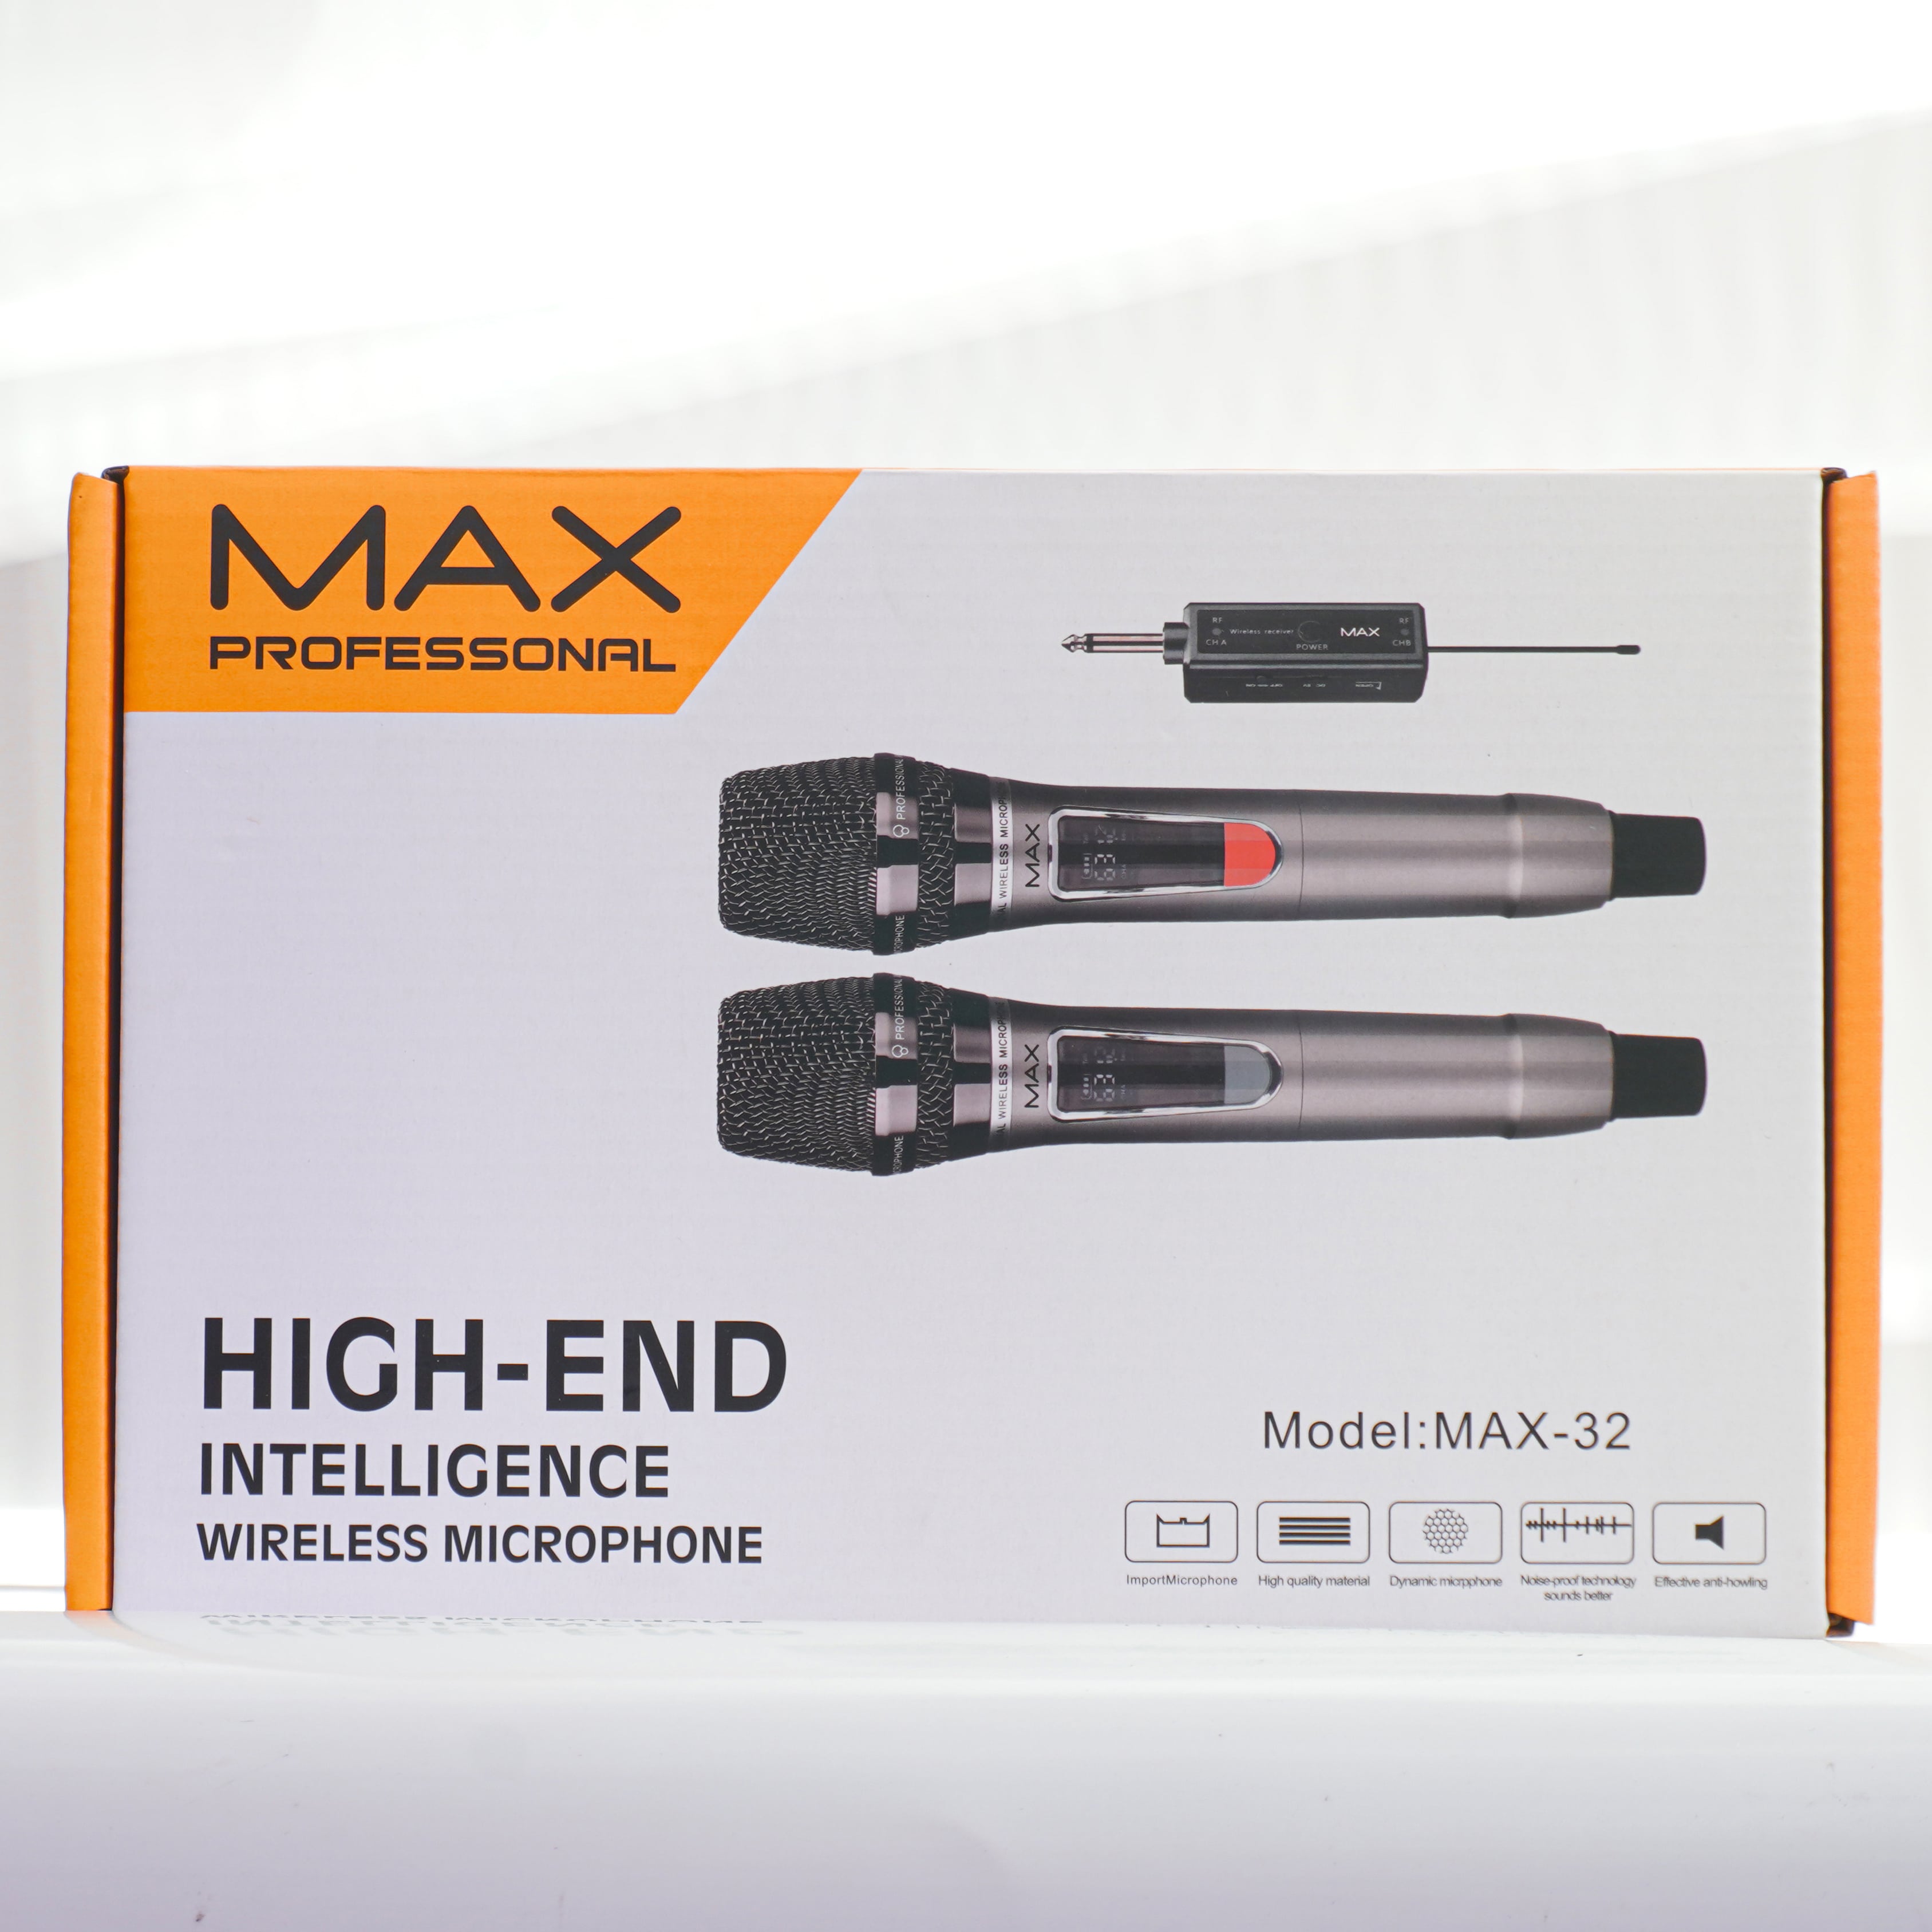 Bộ 2 Micro không dây đa năng Max 32 - Hút âm tốt, chống hú hiệu quả - Màn hình LCD hiển thị tần số - Phù hợp mọi thiết bị - Thiết kế hợp kim chắc chắn, chuyên nghiệp, sang trọng - Hàng nhập khẩu - BH 12 tháng